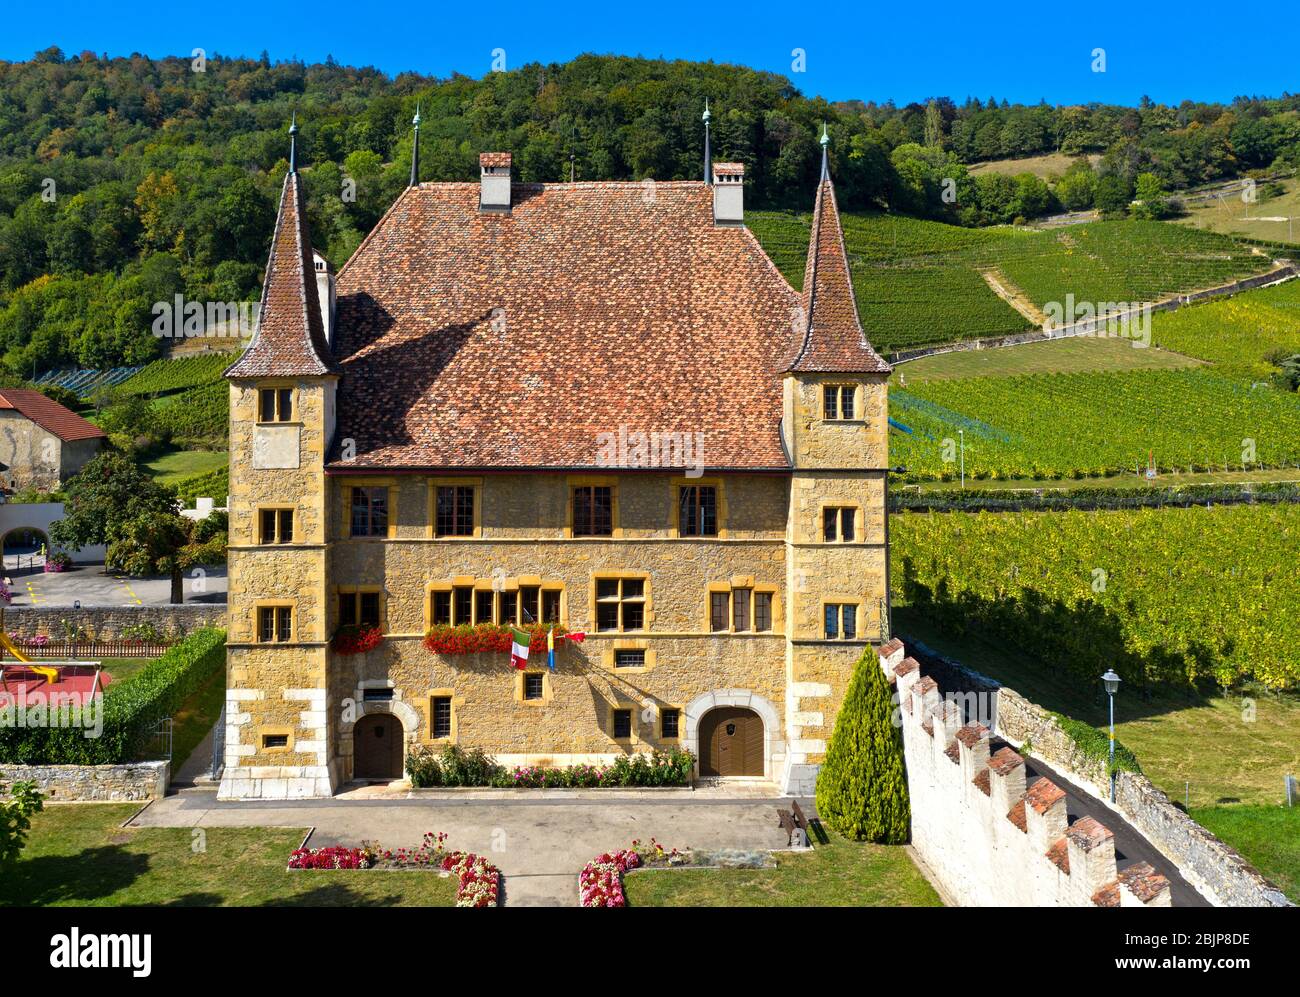 Cressier Castle, Cressier, canton of Neuchâtel, Switzerland Stock Photo